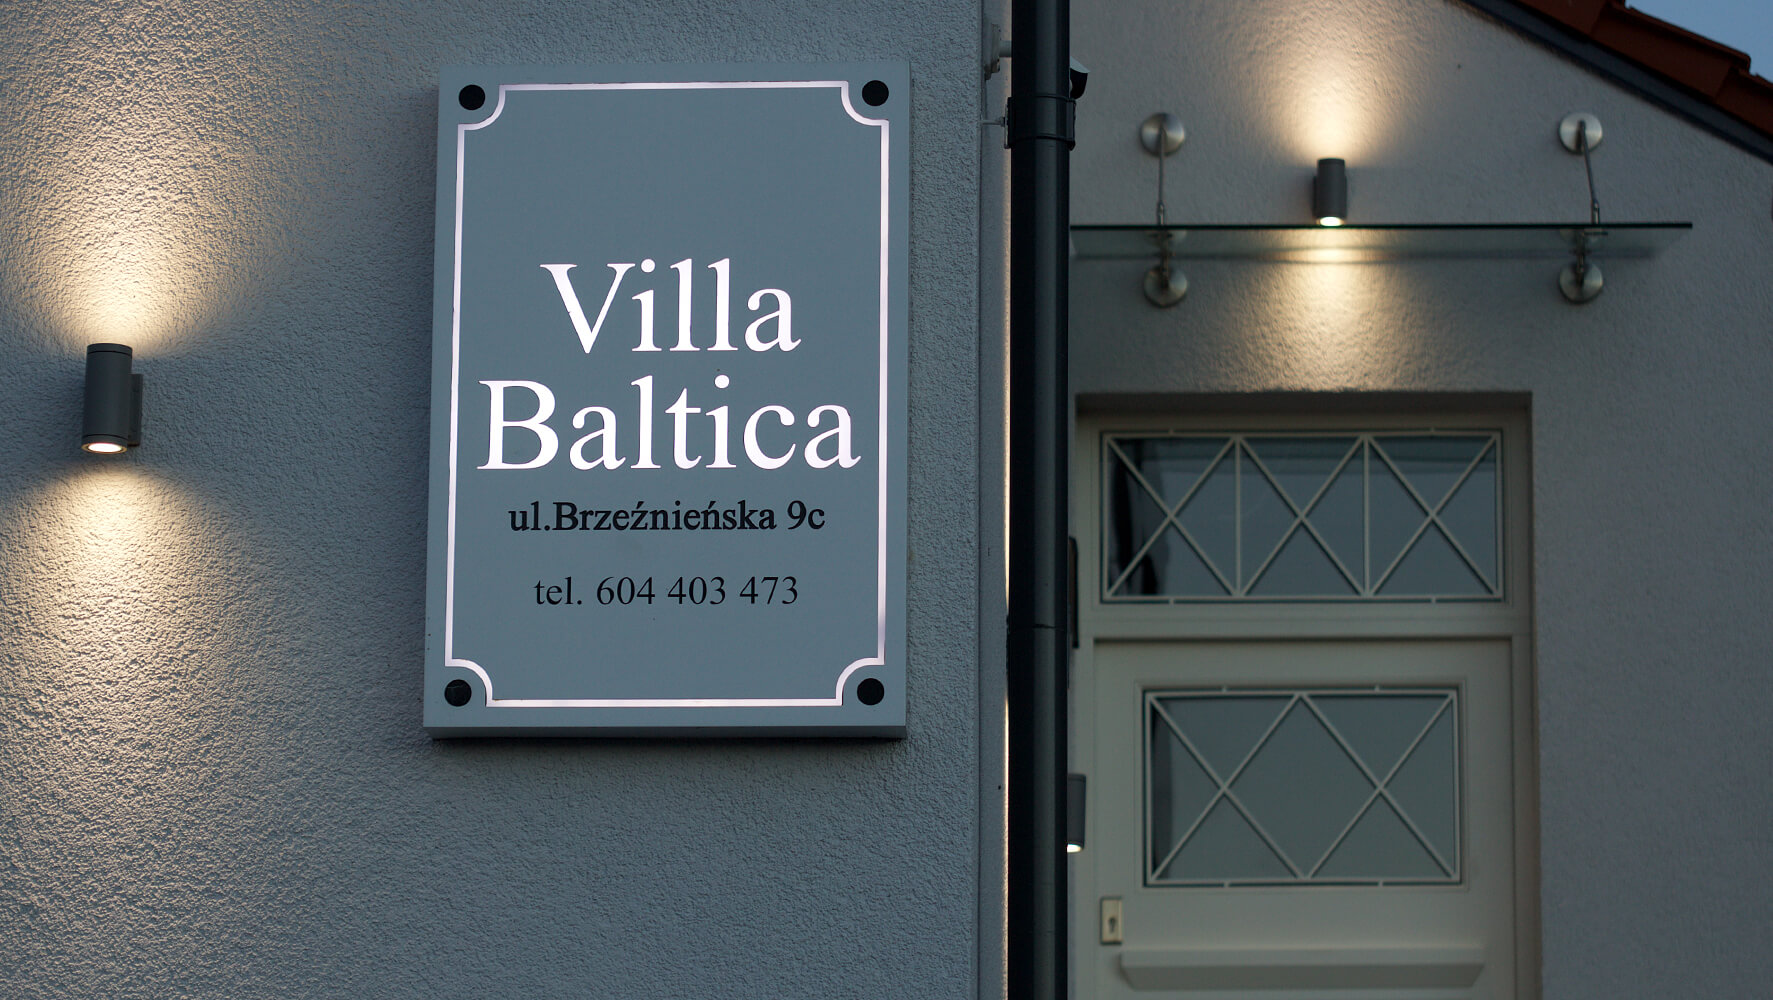 Villa Baltica - Villa Baltica - company's signboard on a dibond coffer